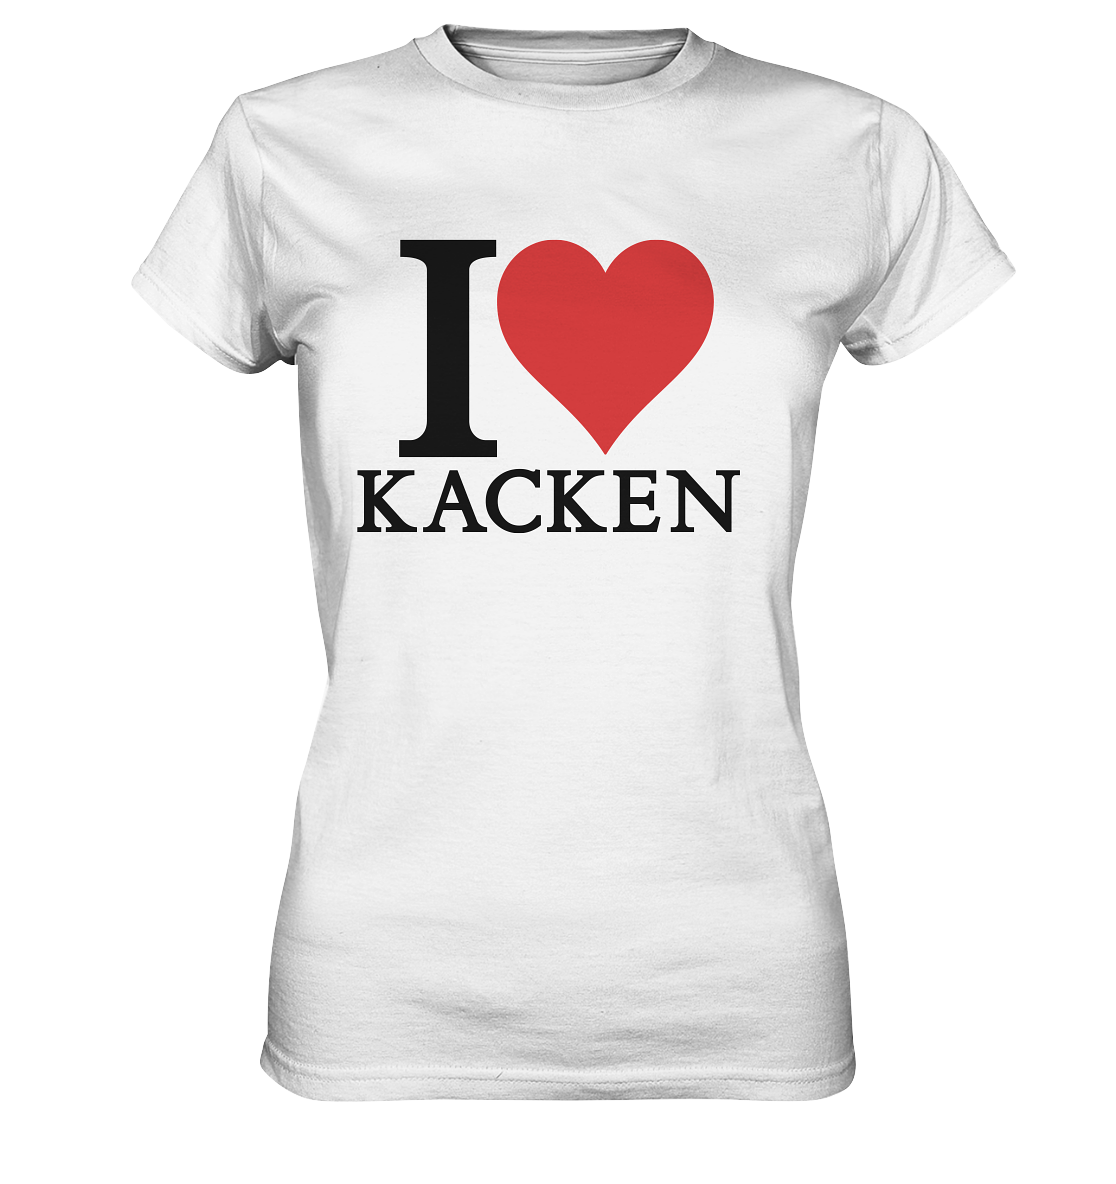 I love kacken Ladies Premium Shirt - Baufun Shop